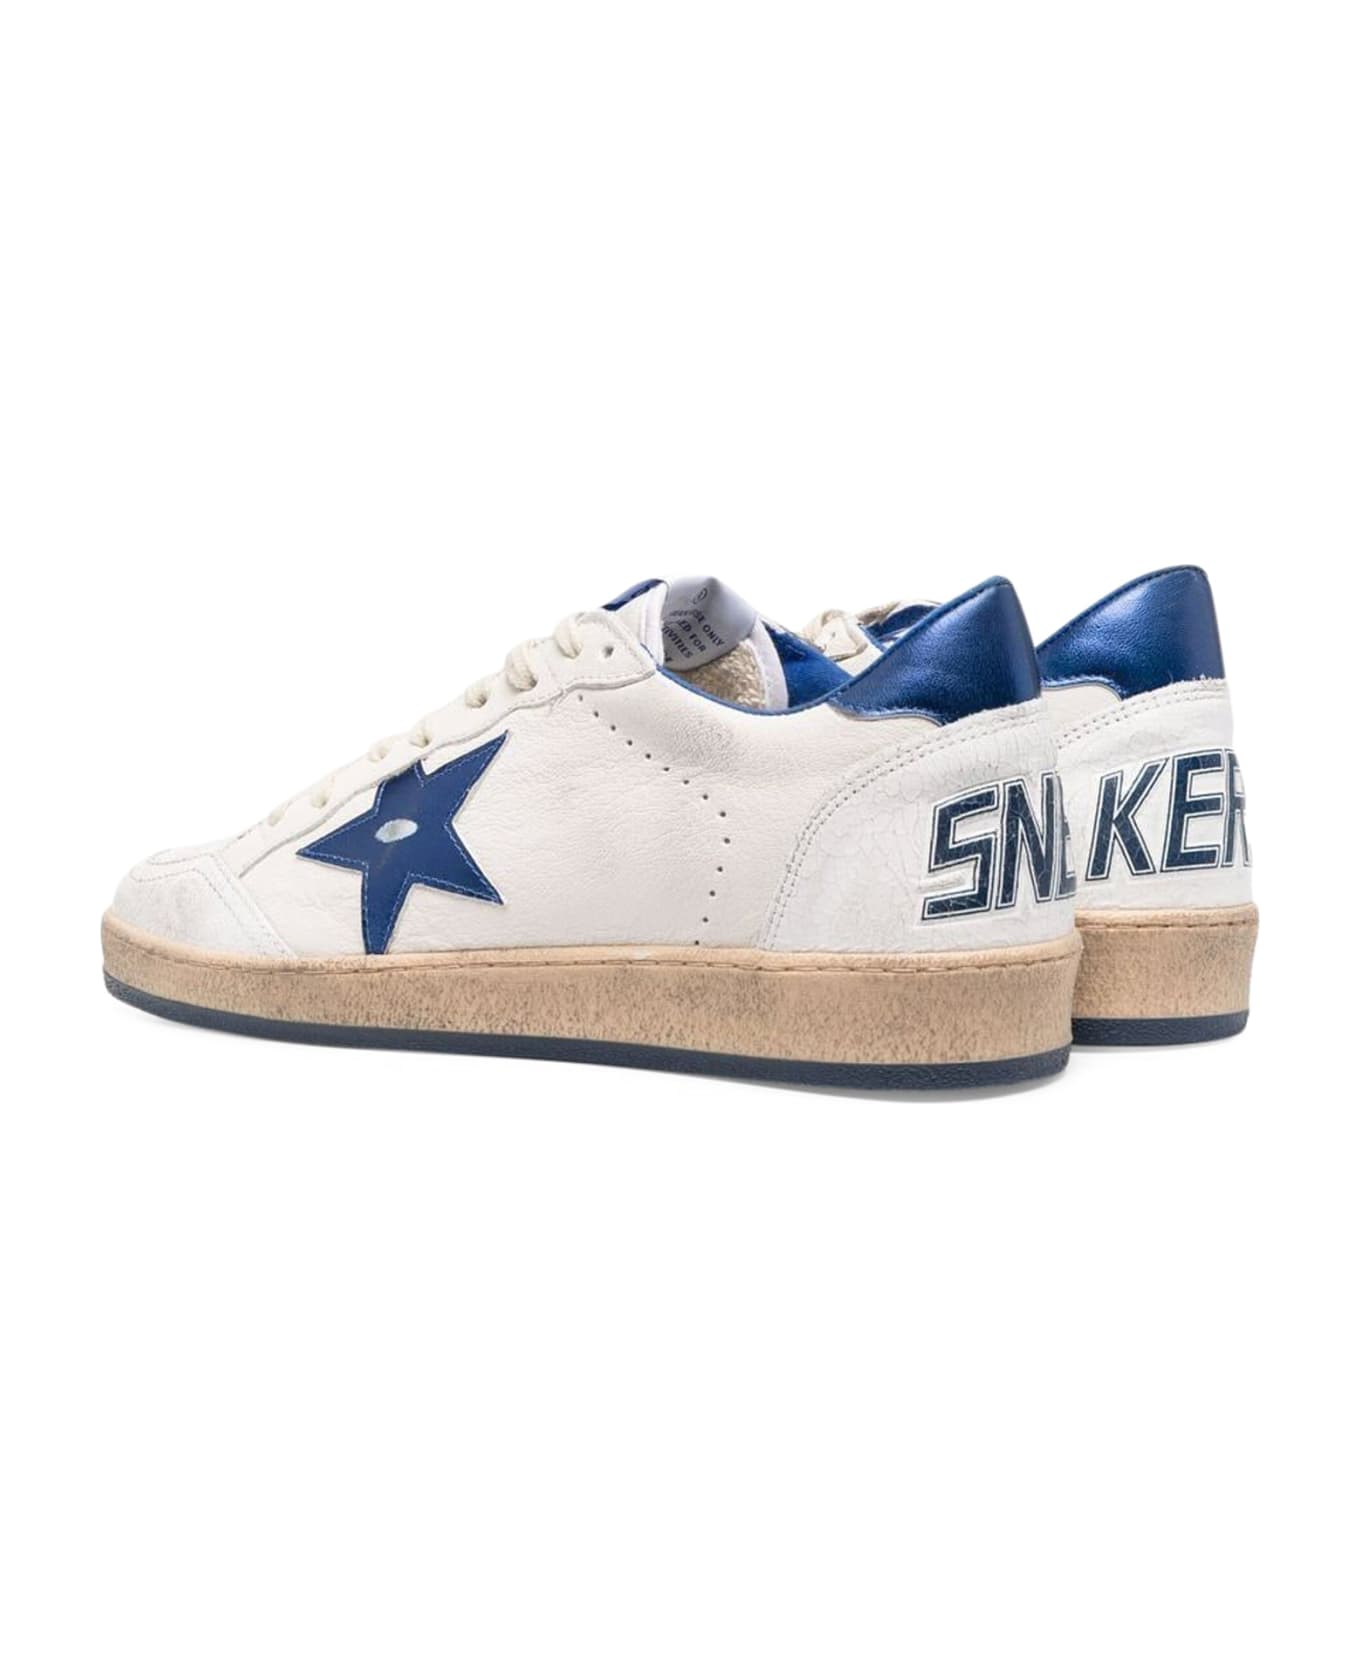 Golden Goose Ball Star Sneakers - White/Bluette スニーカー